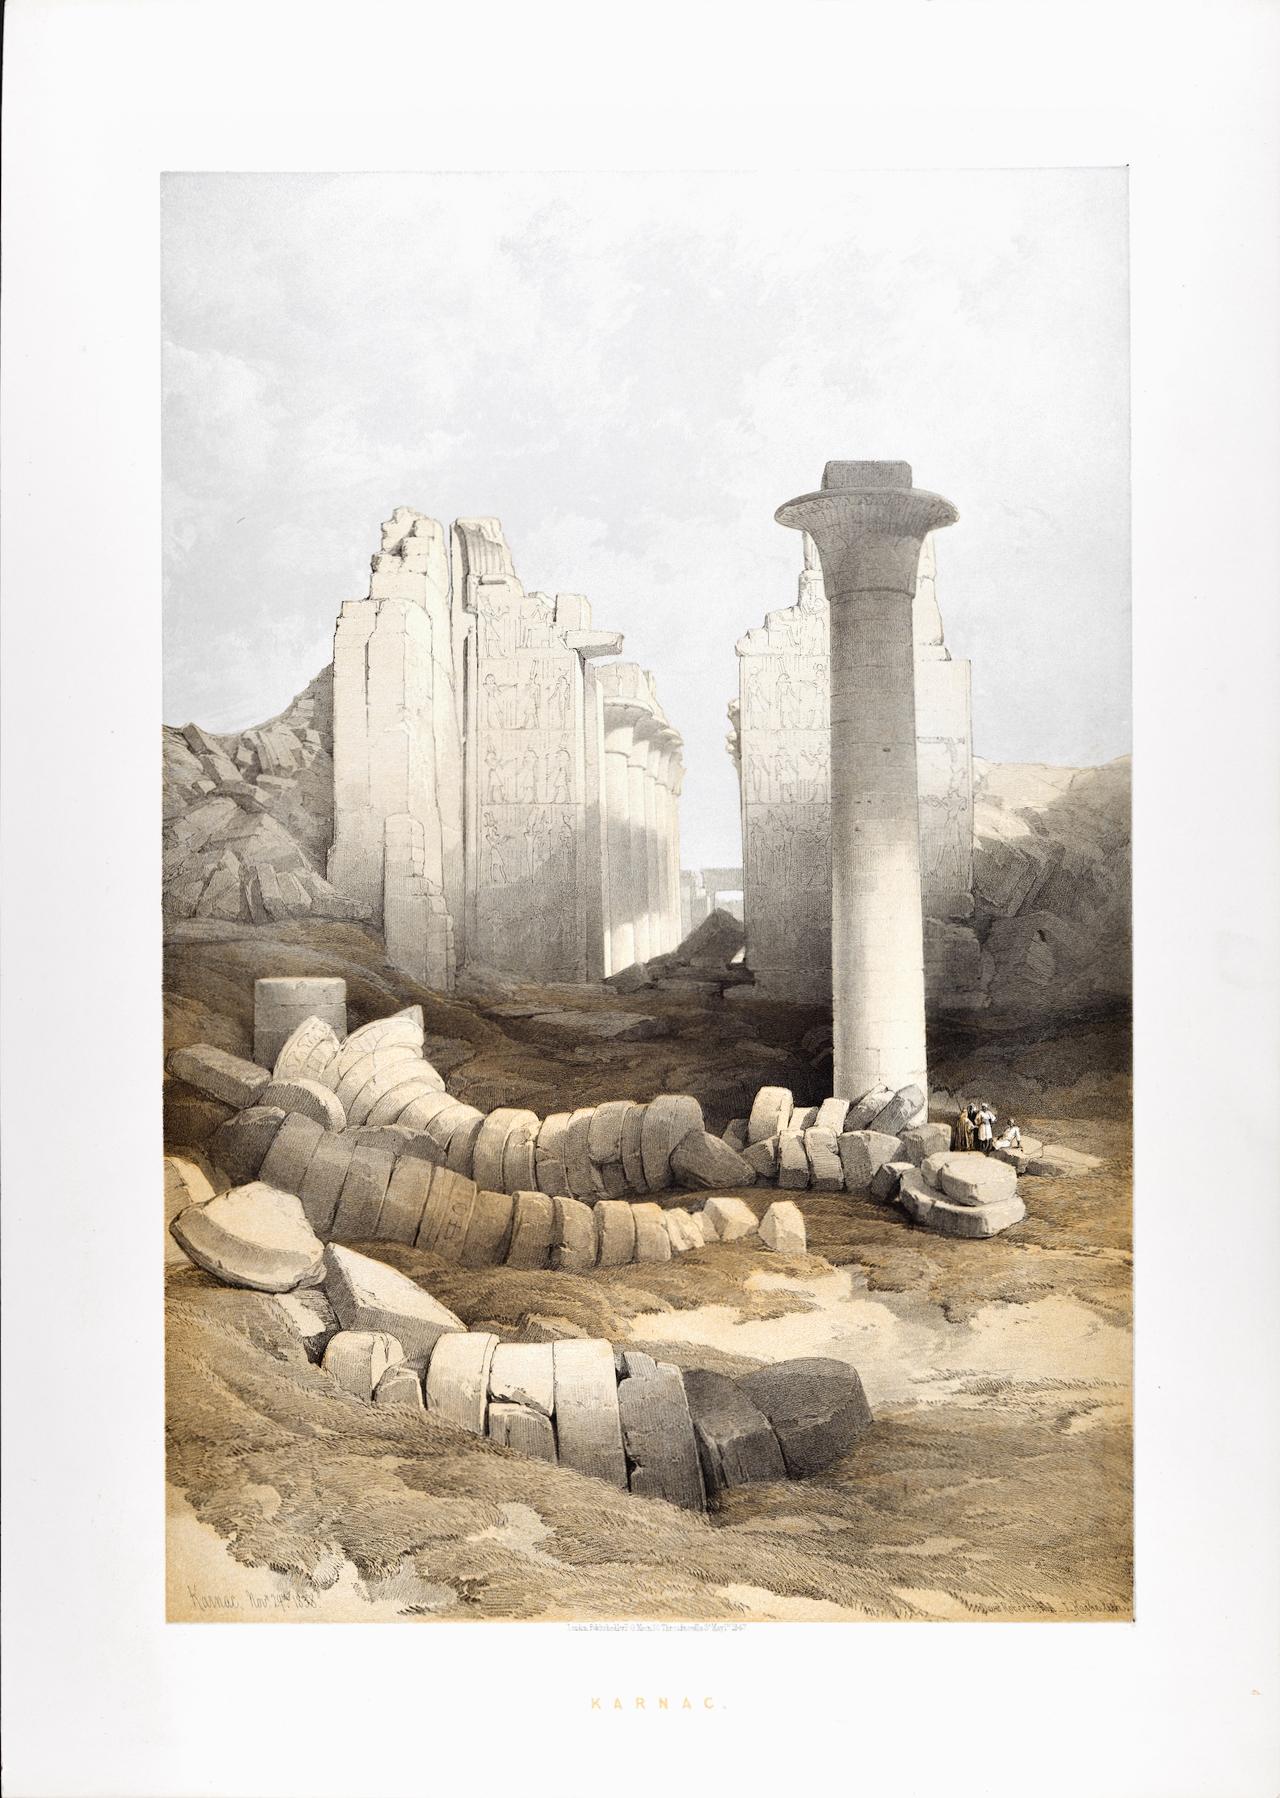 Karnac, 29. November 1838 in Ägypten: David Roberts' zweifarbige Lithographie aus dem 19. Jahrhundert